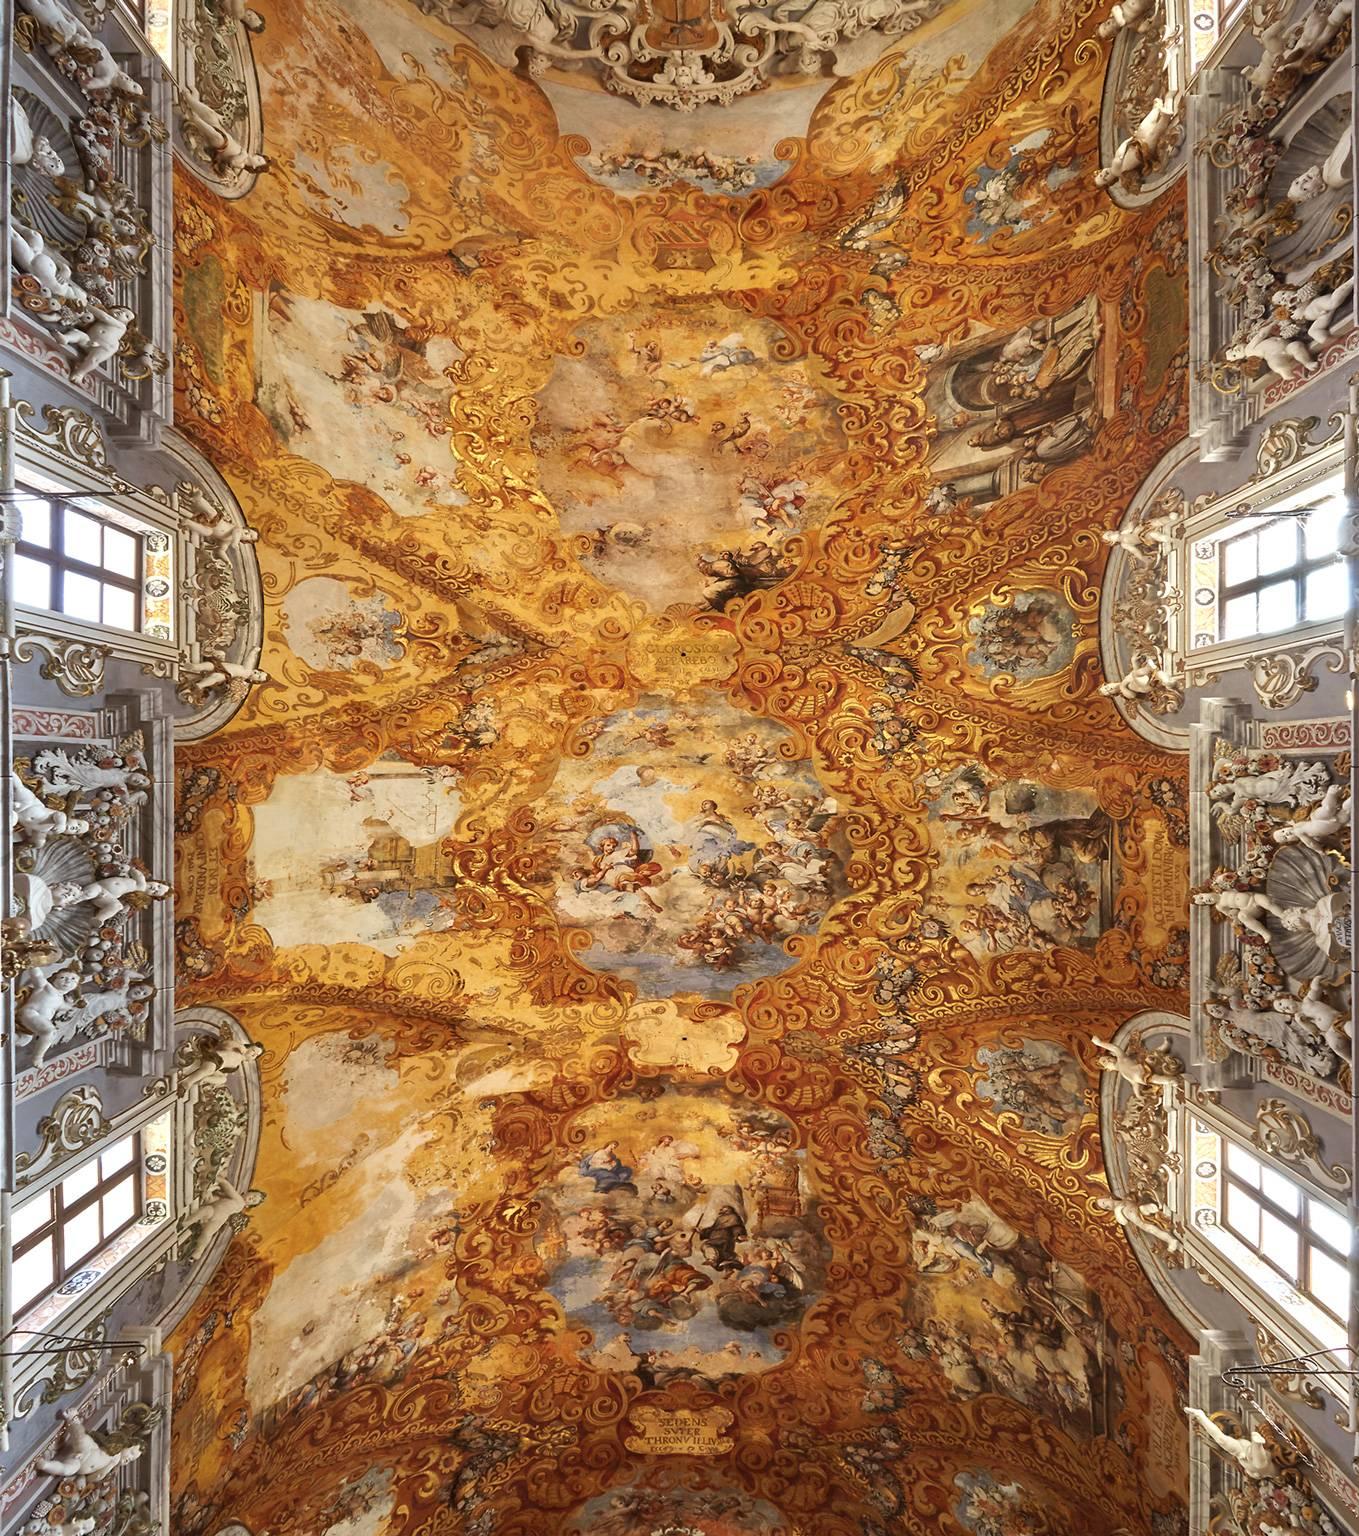 Hallelujah - Großformatfotografie einer barocken italienischen Palazzofriss-Deckendecke im Barockstil